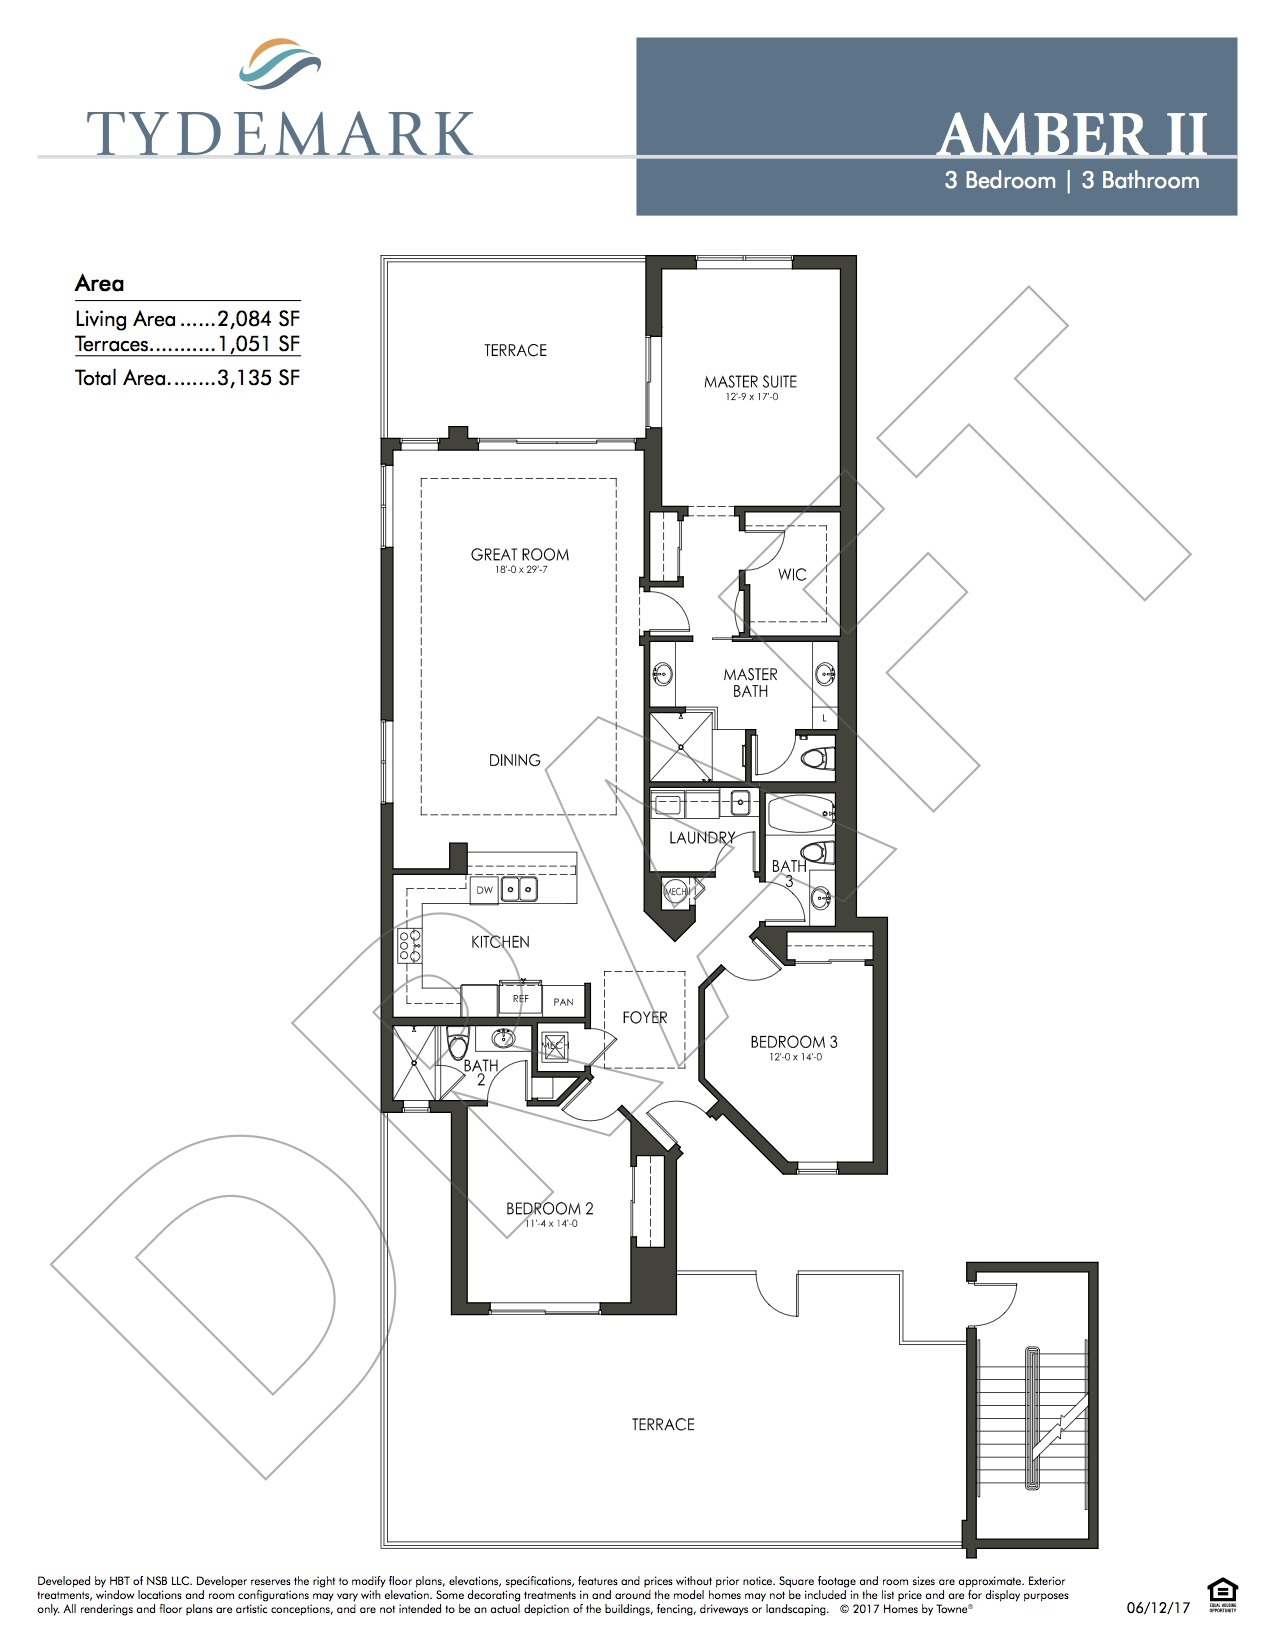 Amber II floor plan — view layout below